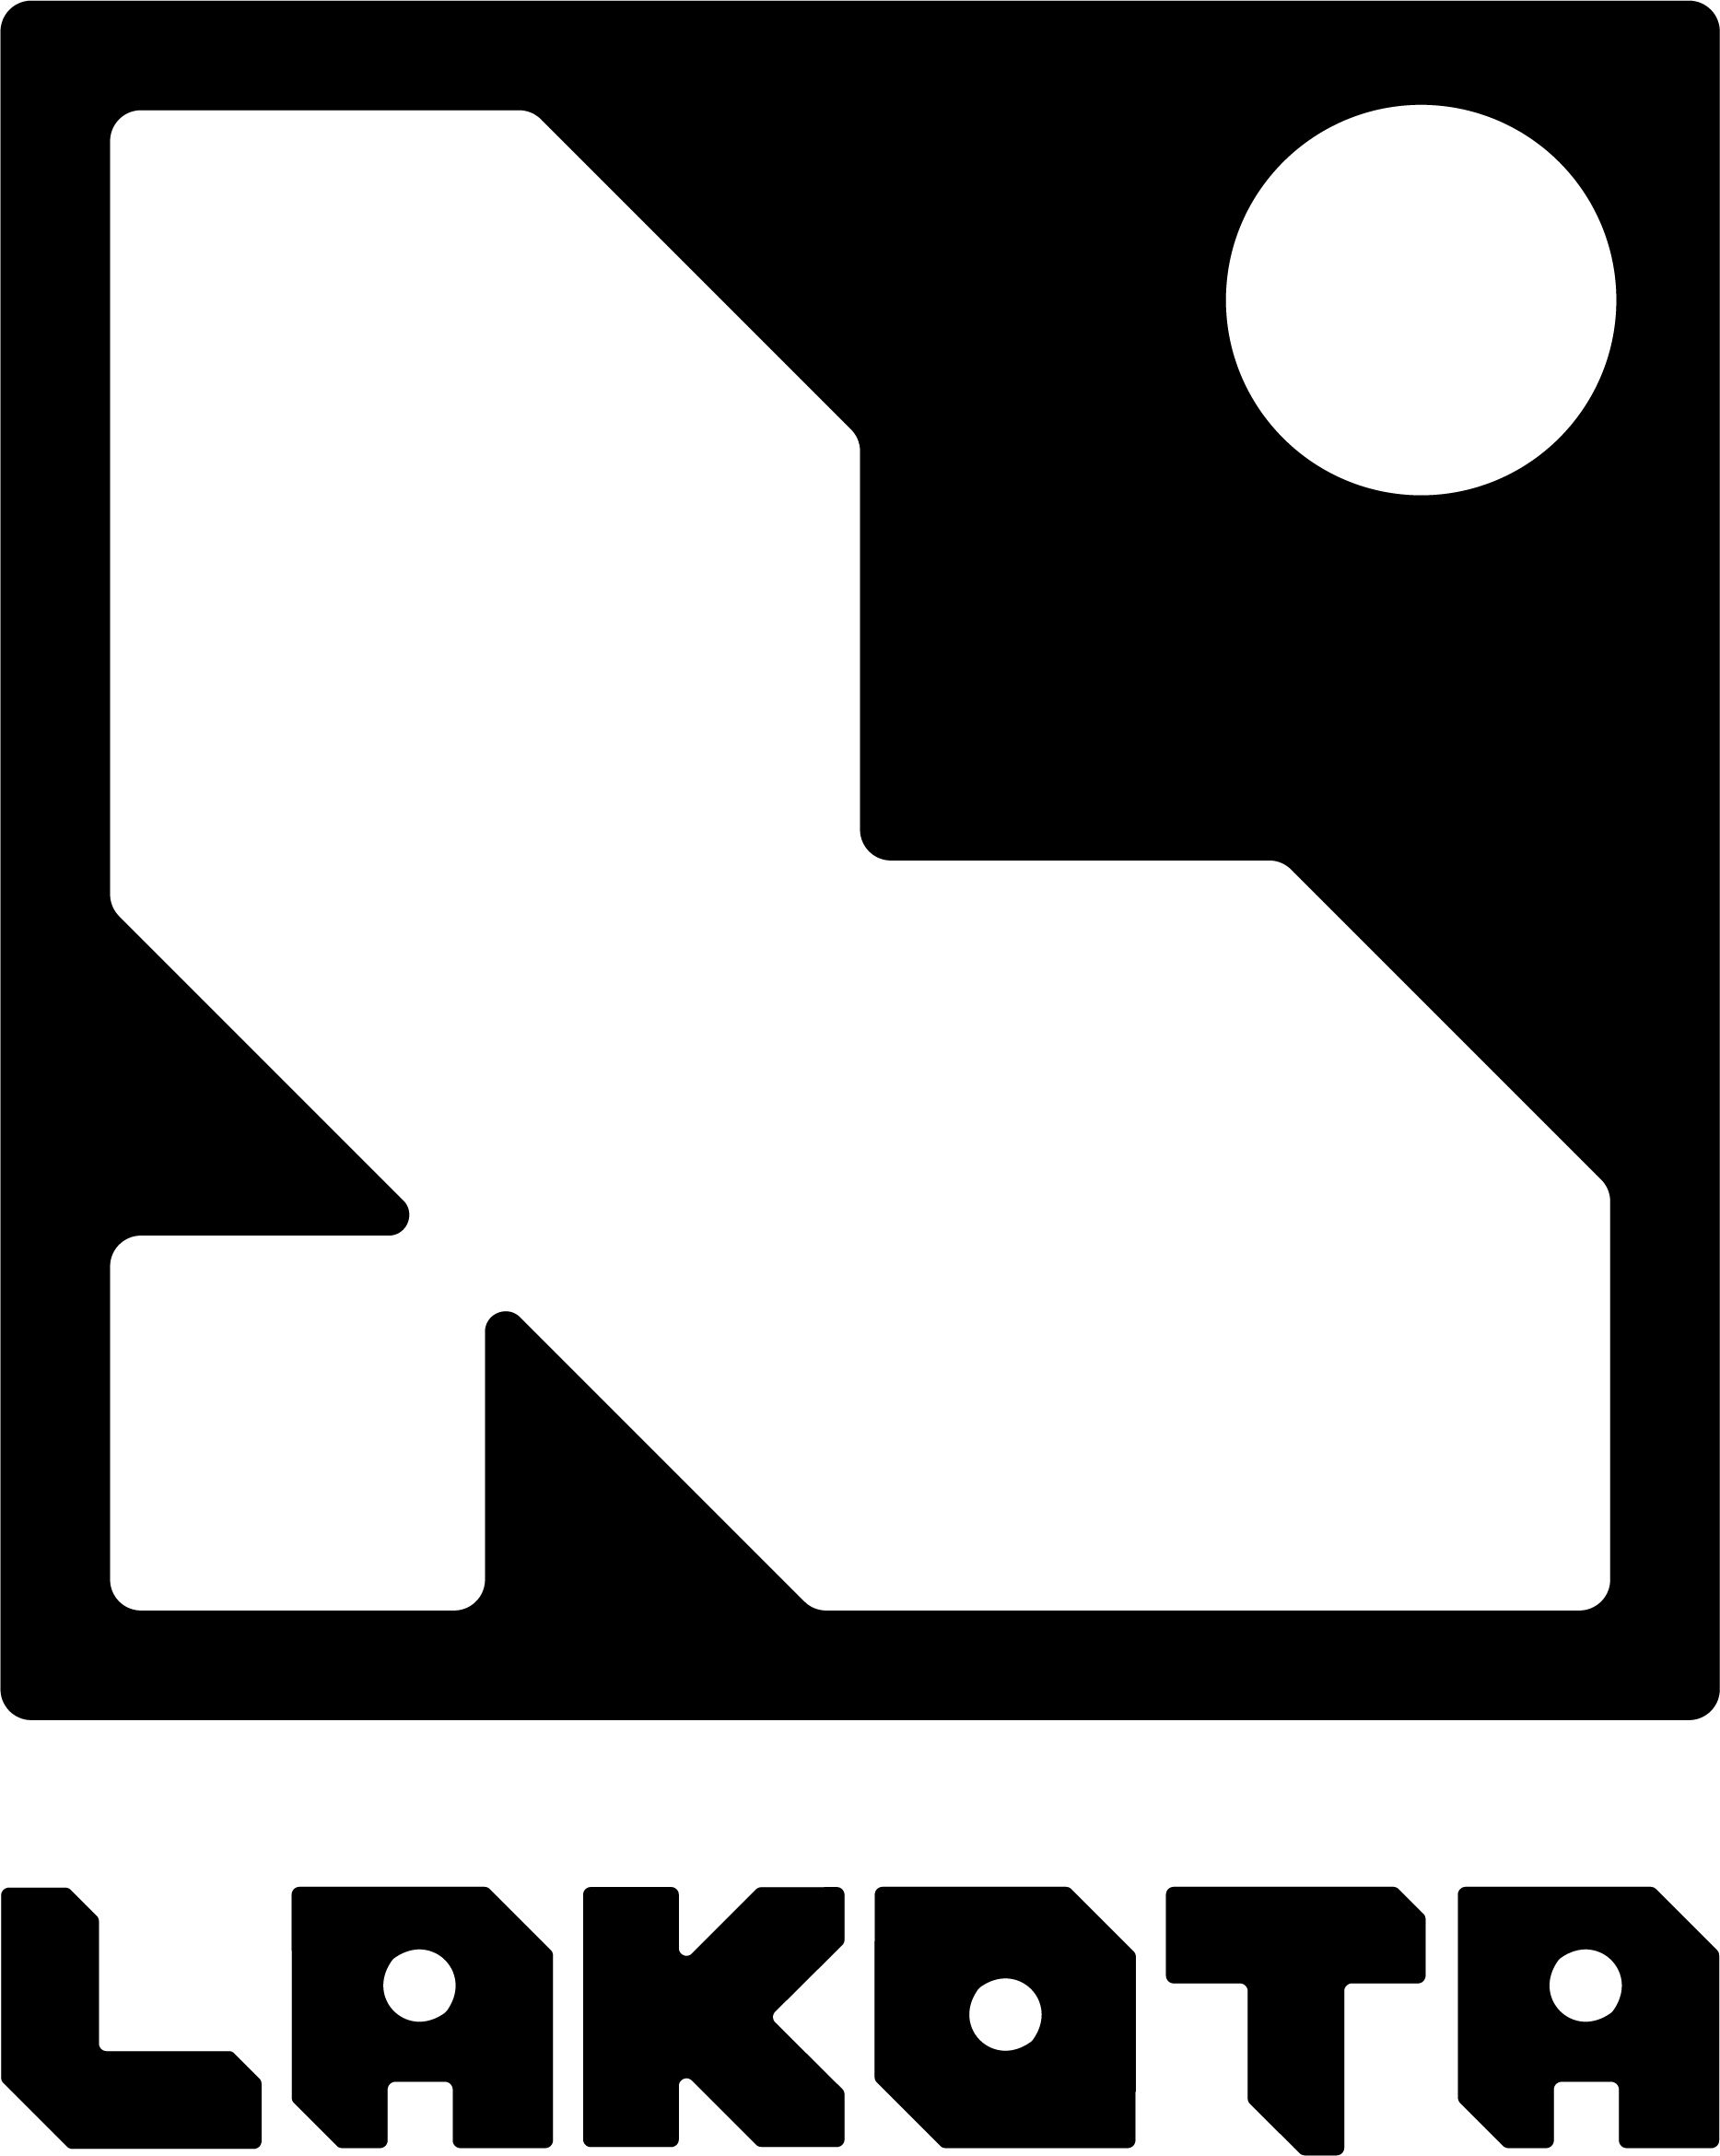 logo for Lakota